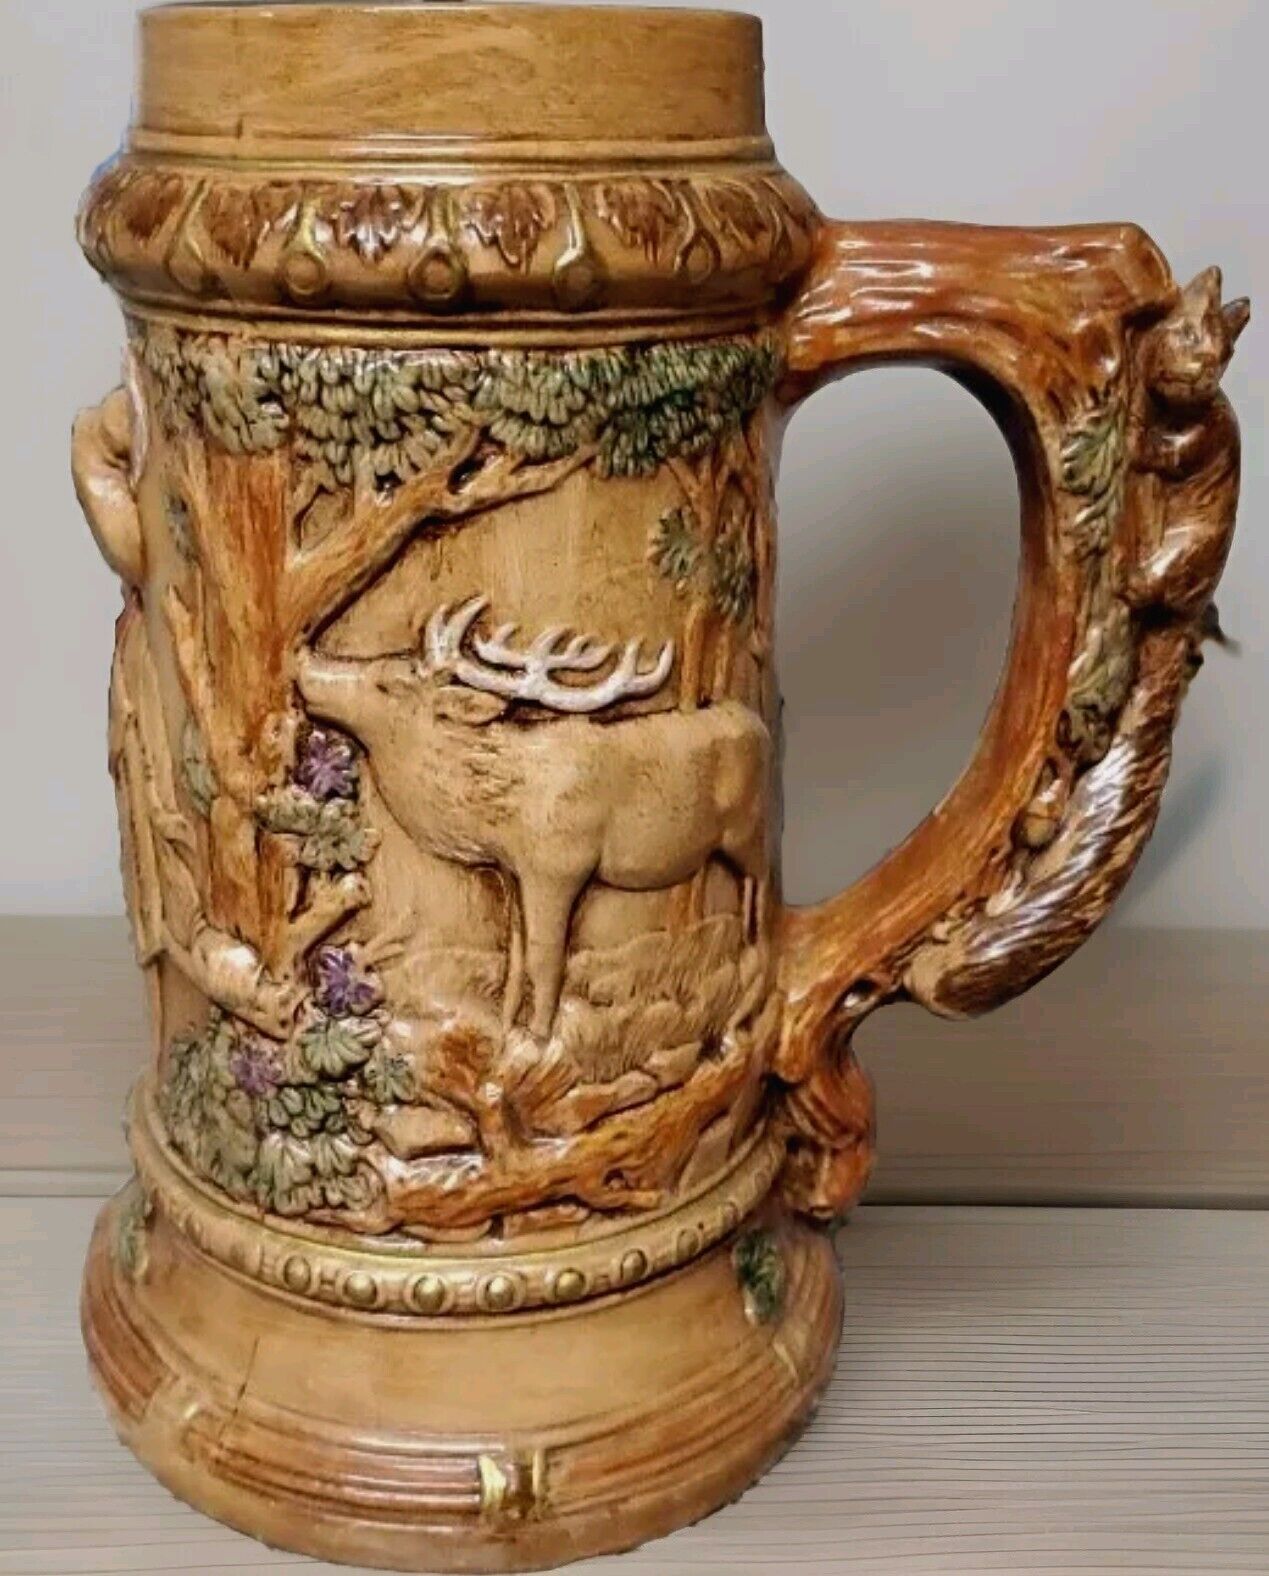 Large Vintage Ceramic German Beer Stein Mug w/ Elk, Squirrel, Deer, Man 1973